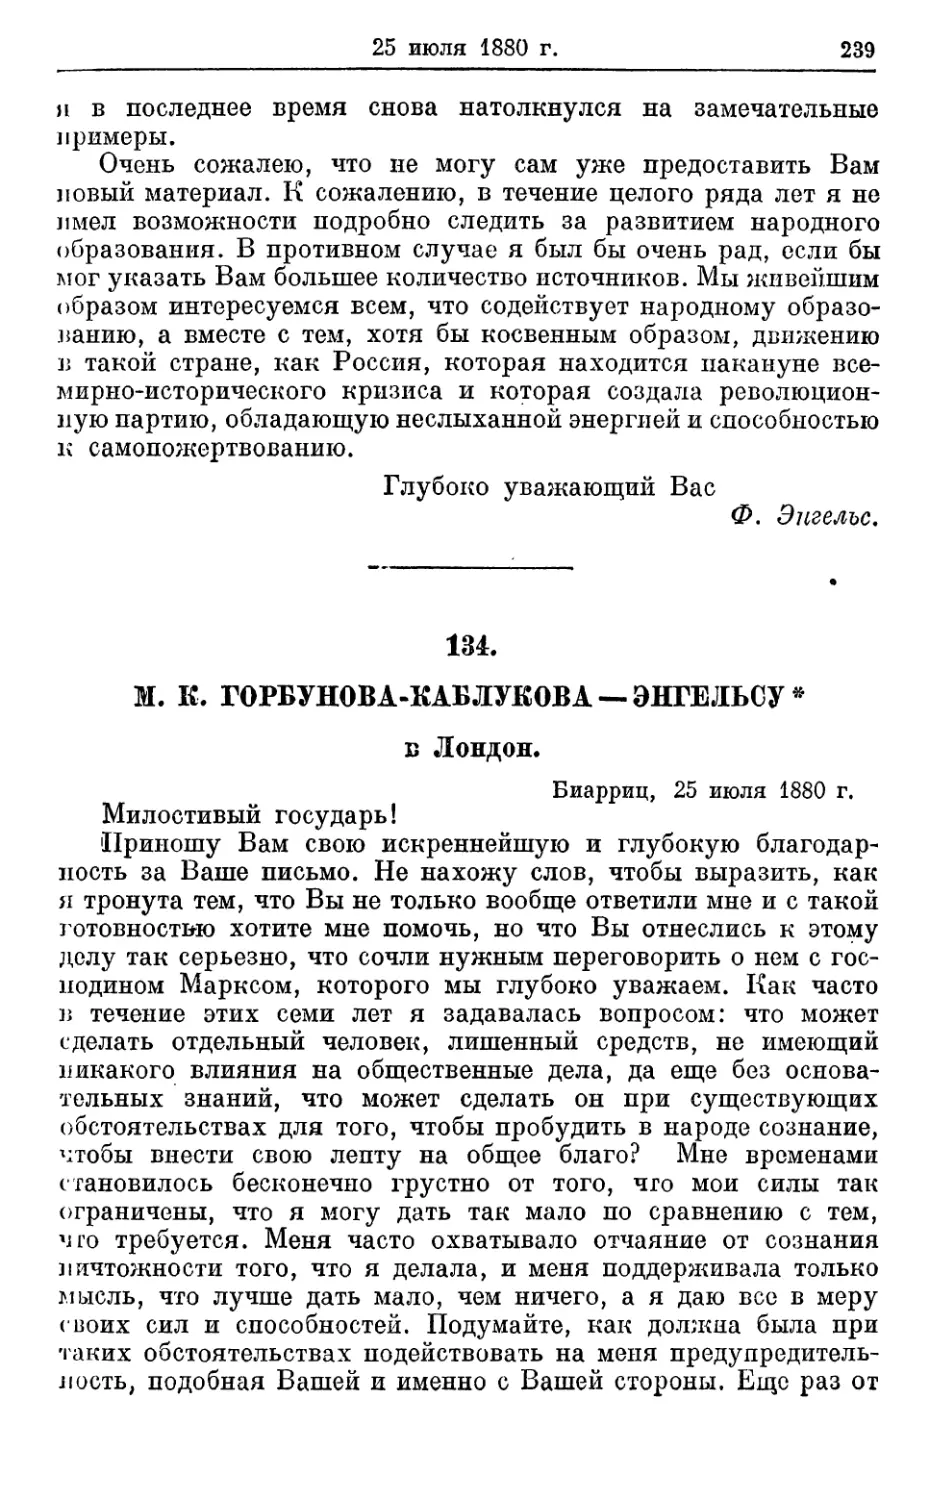 134. Горбунова-Каблукова — Энгельсу *, 25 июля 1880г